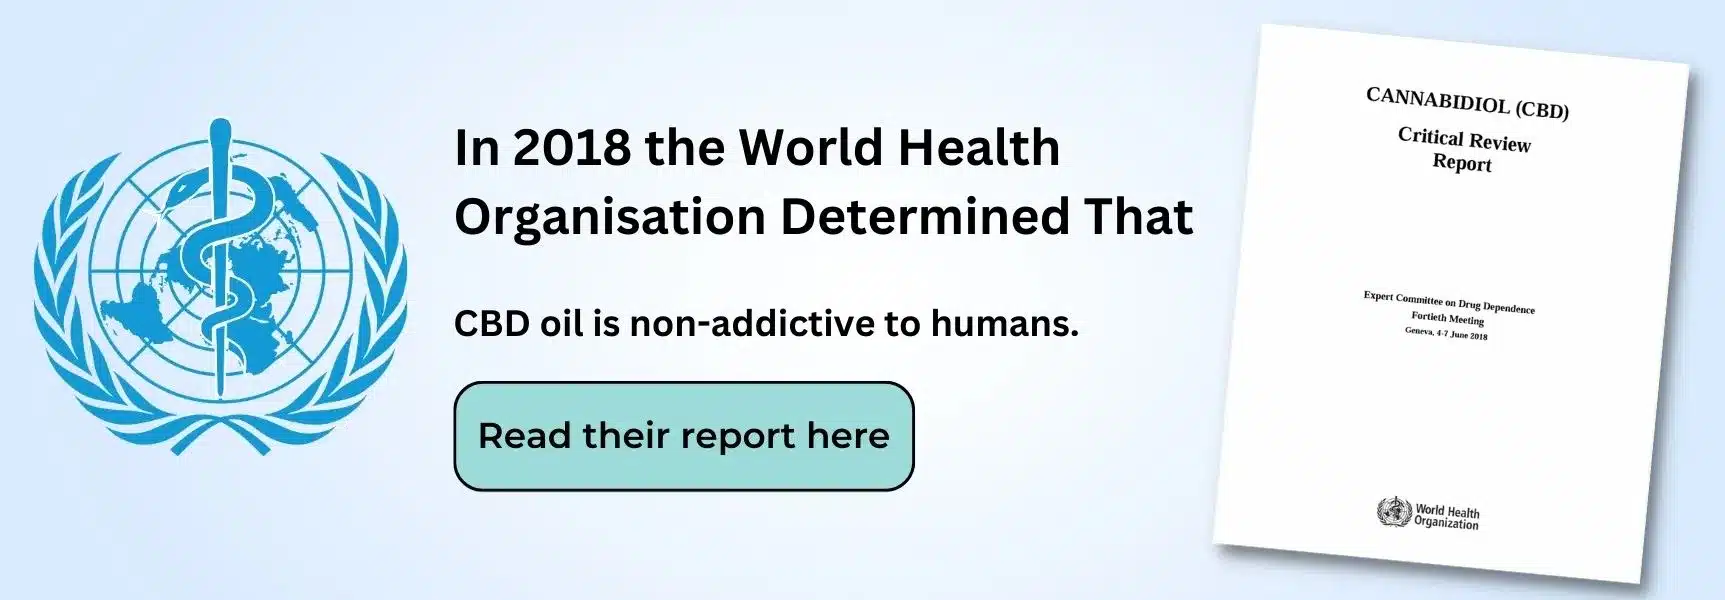 une bannière indiquant qu'en 2018, l'Organisation mondiale de la santé a jugé CBD être non addictif et poser peu de problèmes de sécurité publique. Cette bannière renvoie au rapport de l'OMS.